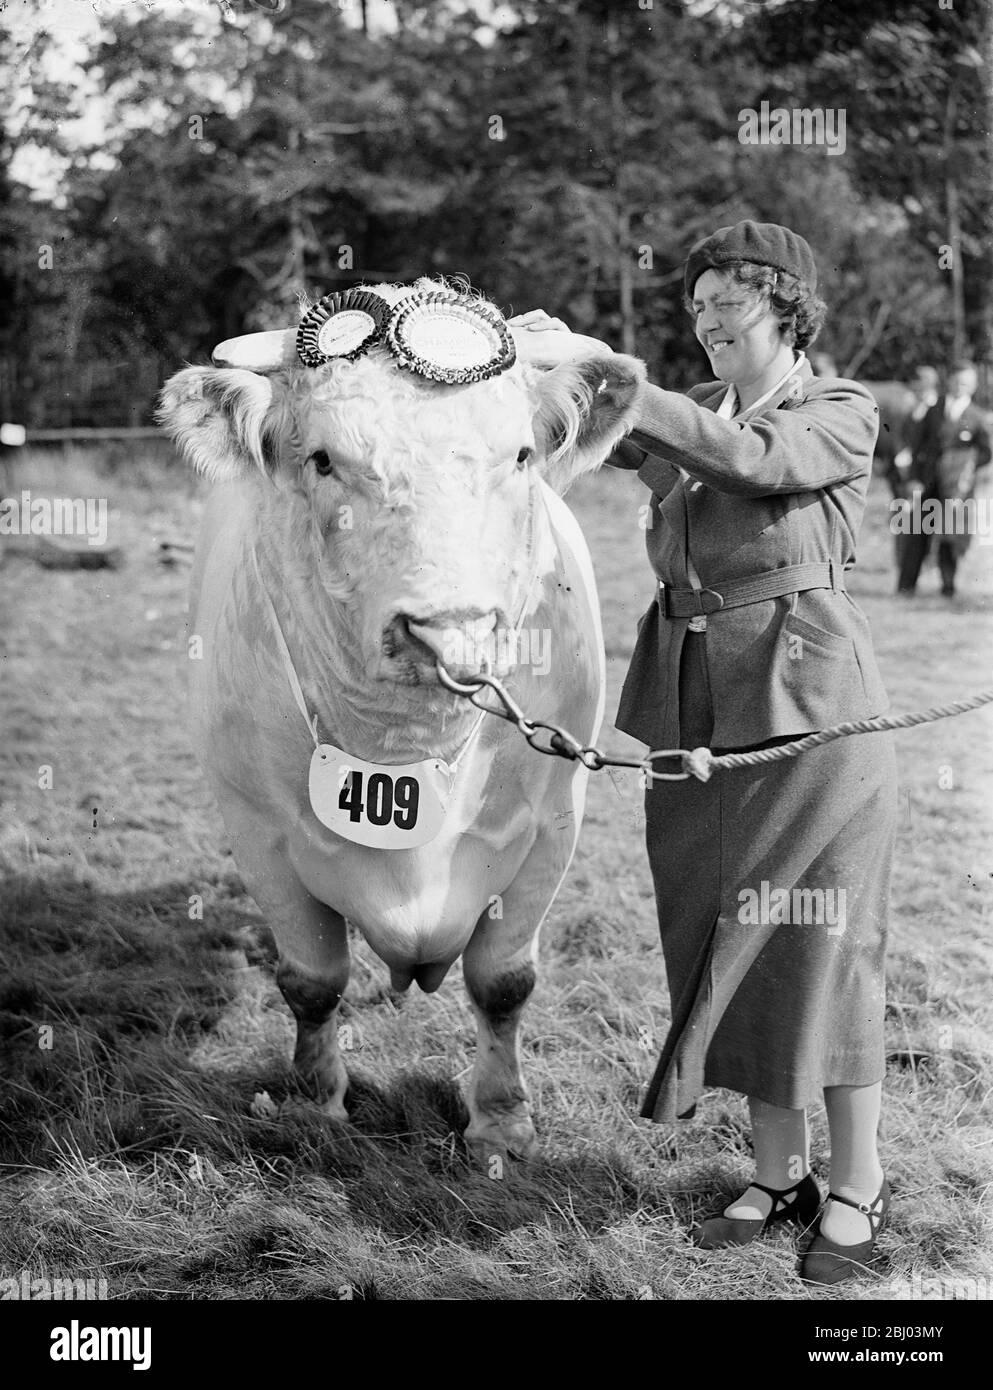 Burryhill Imperial Bates di Lt col R.W Barclay di Longmore, Dorking. Ricevette la rosetta dopo essere stato giudicato campione dell'annuale mostra agricola di Chertsey. Questo è l'undicesimo campionato che ha vinto quest'anno. - 15 settembre 1937. Foto Stock